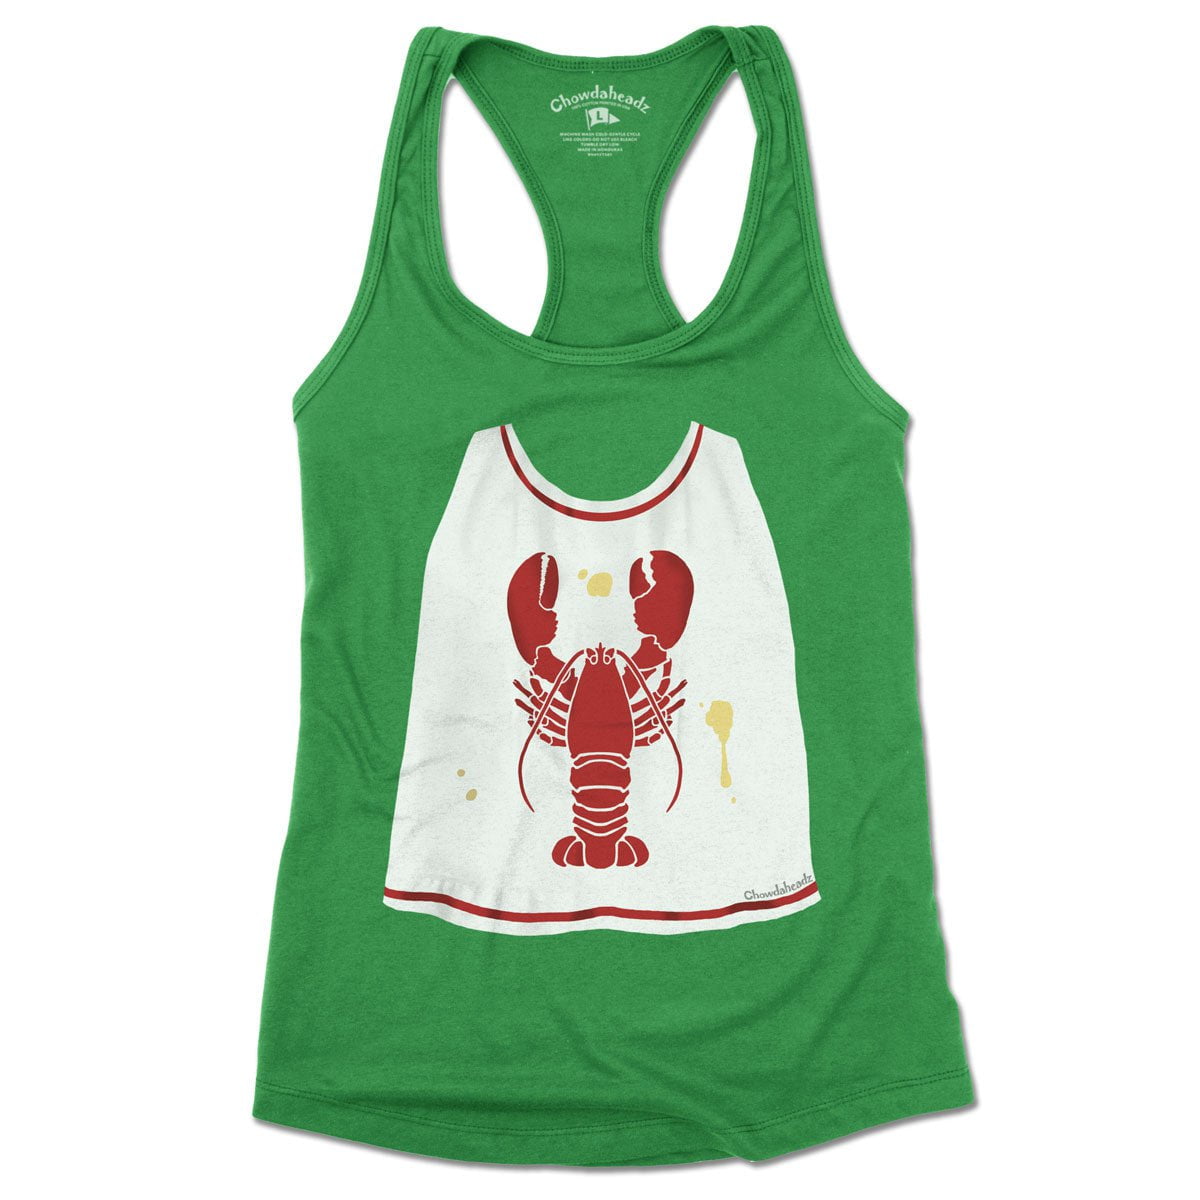 Lobster Bib Women's Tank Top - Chowdaheadz